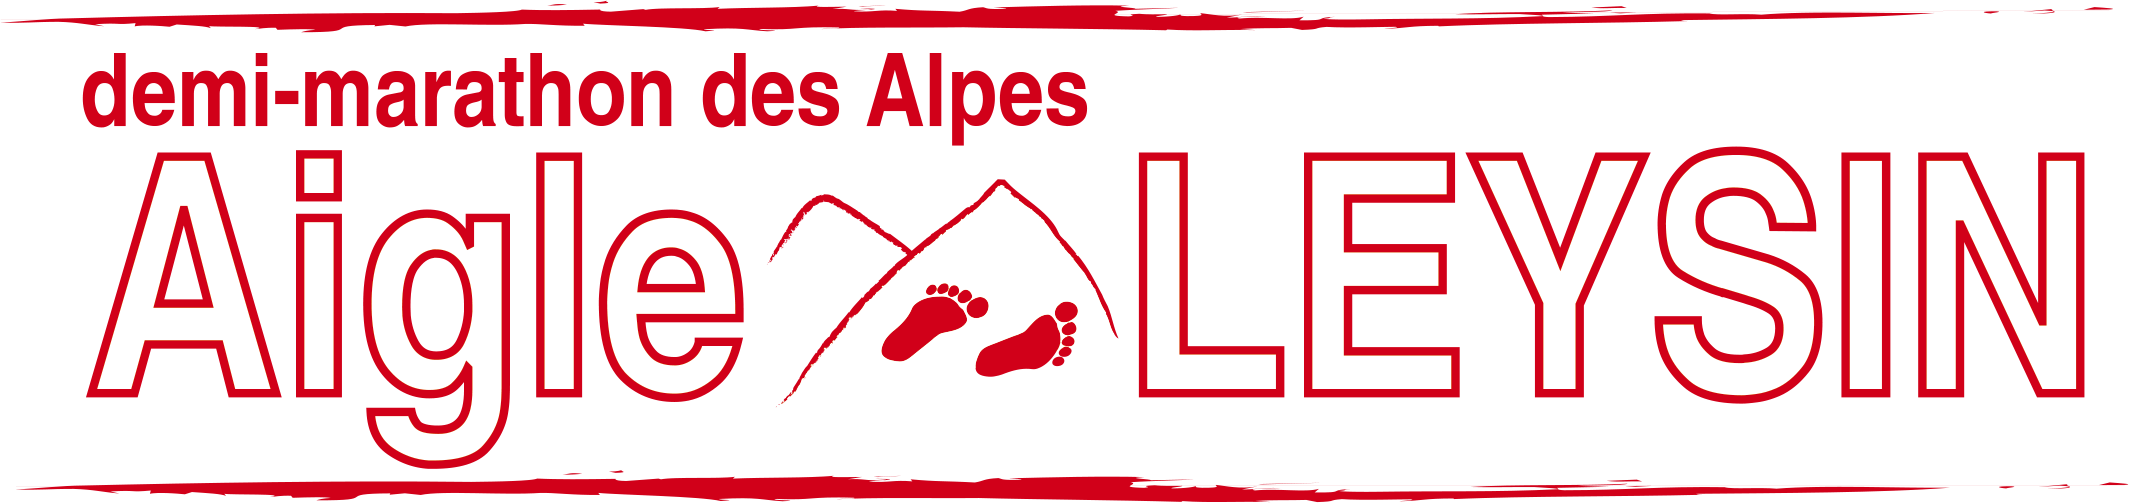 33. Demi-marathon des Alpes Aigle-Leysin